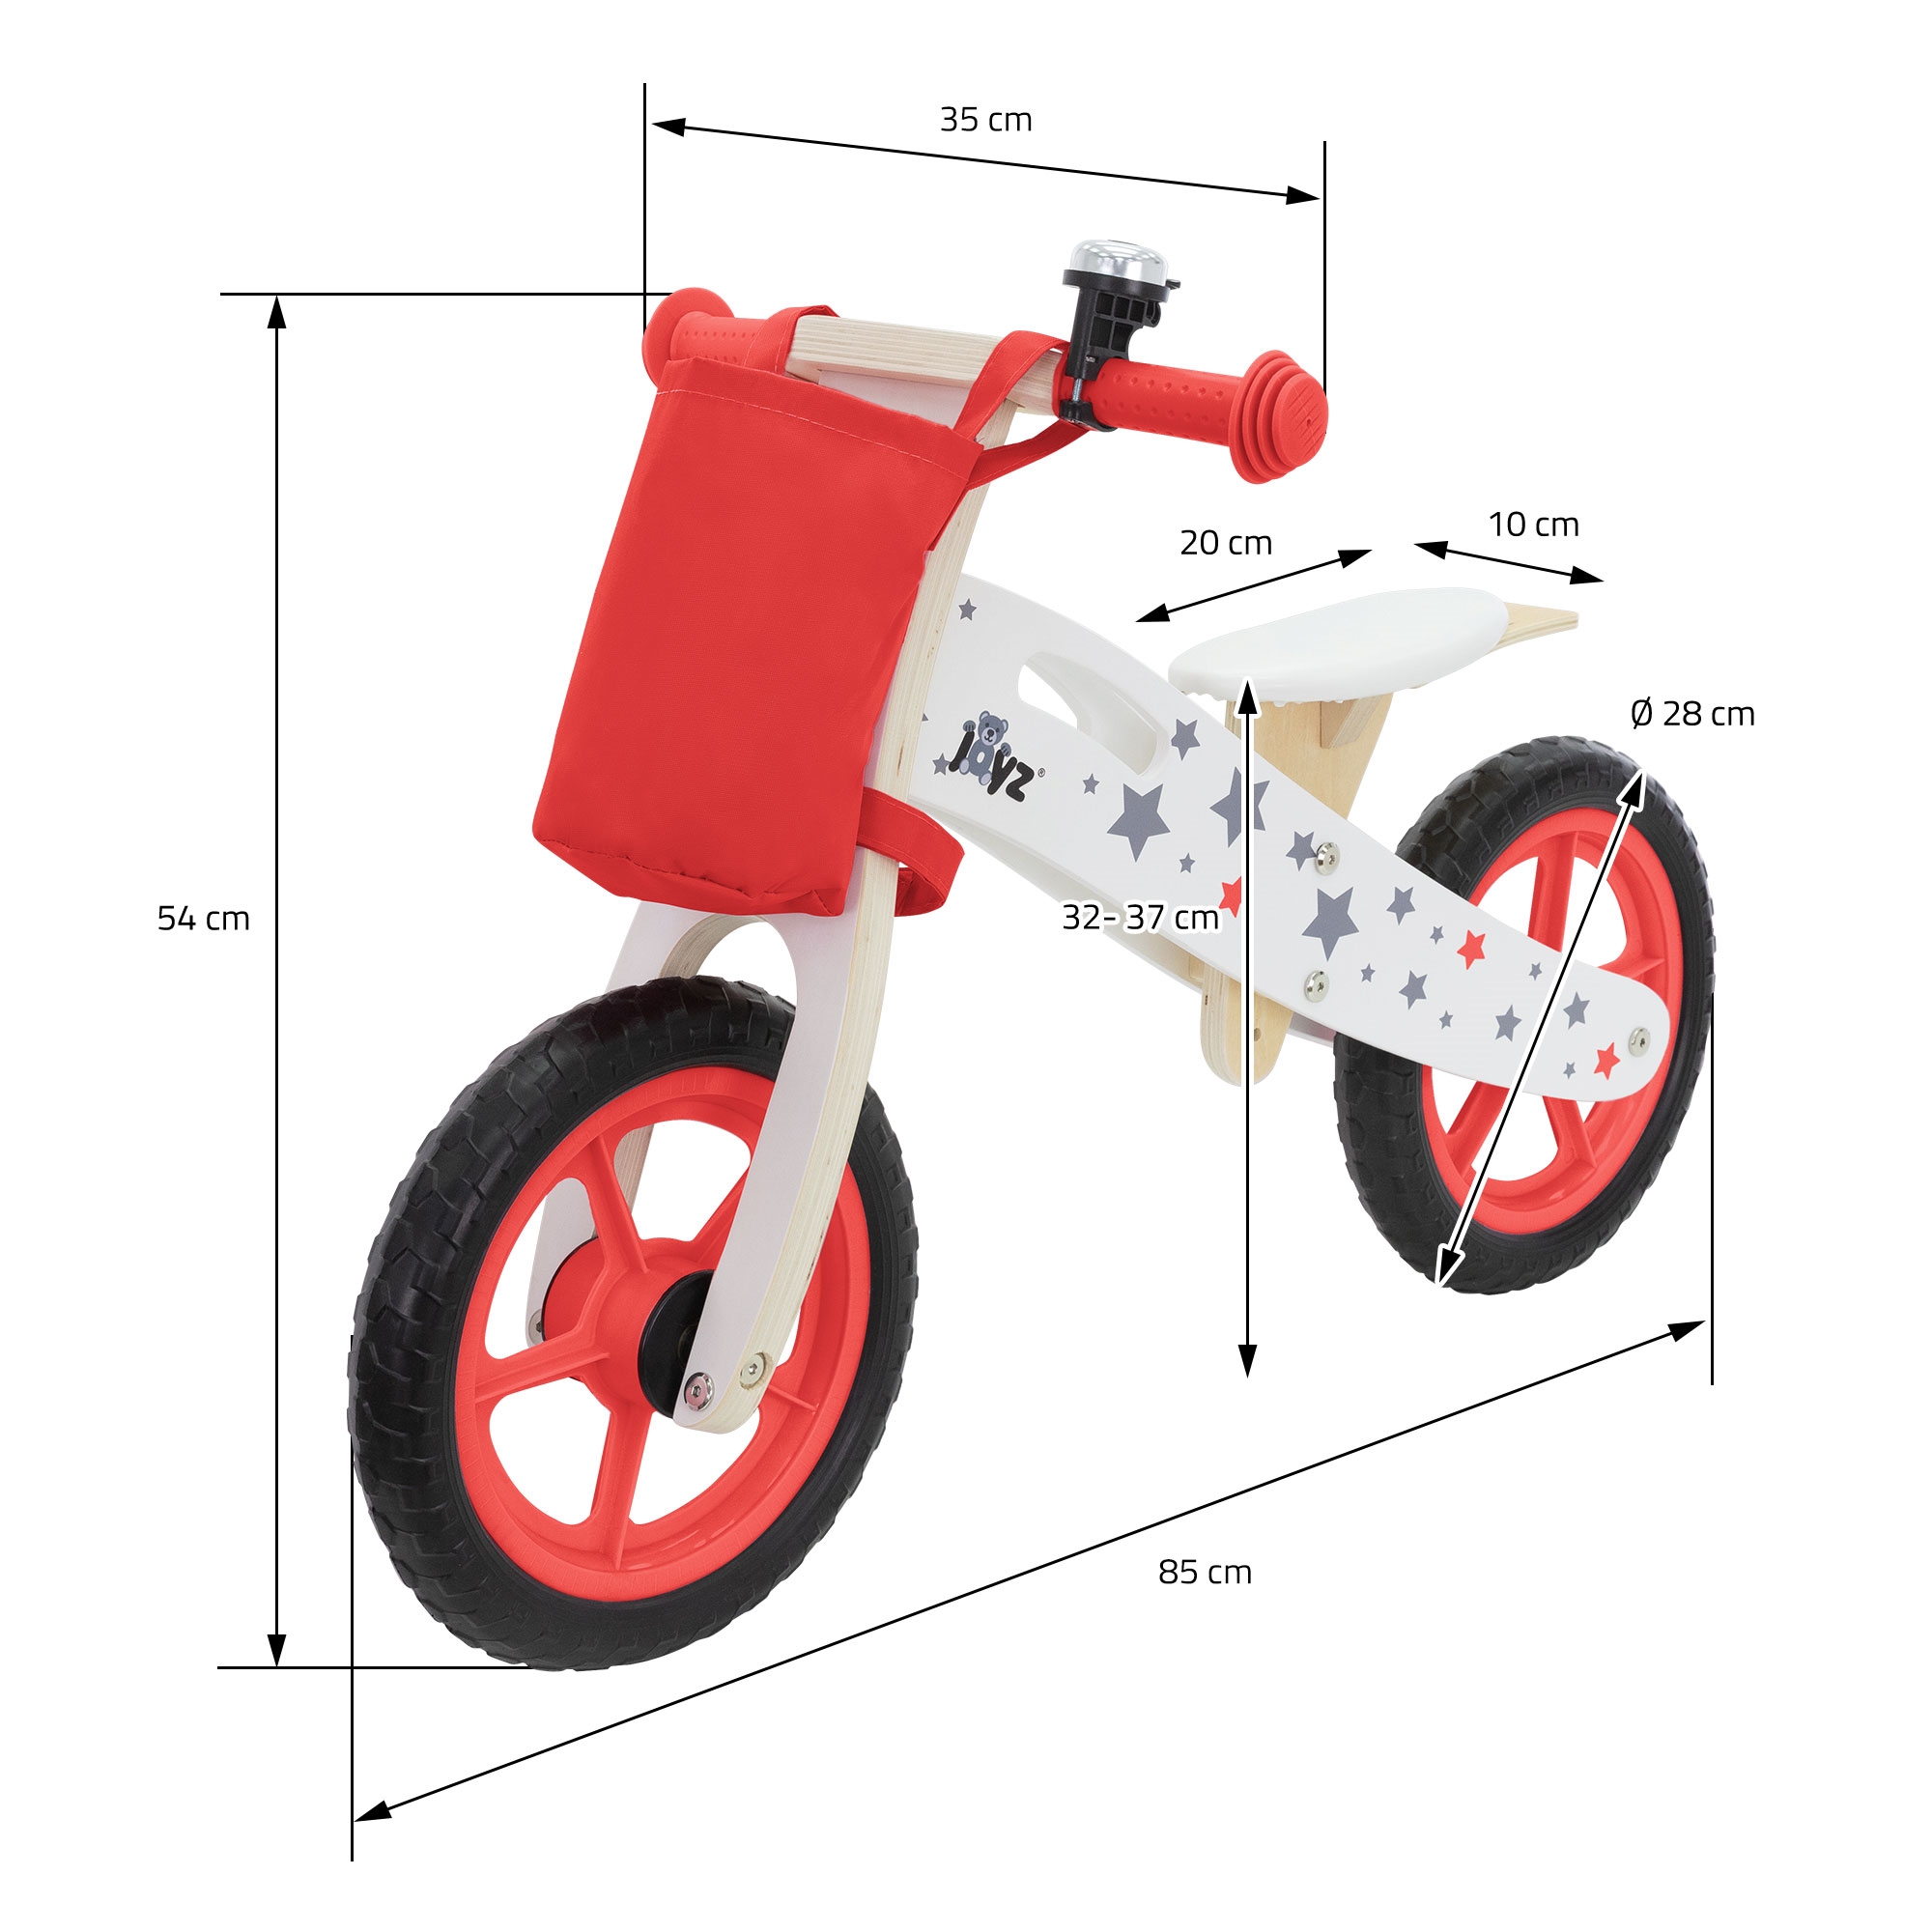 Bicicleta eléctrica plegable de Lidl: características, precio y